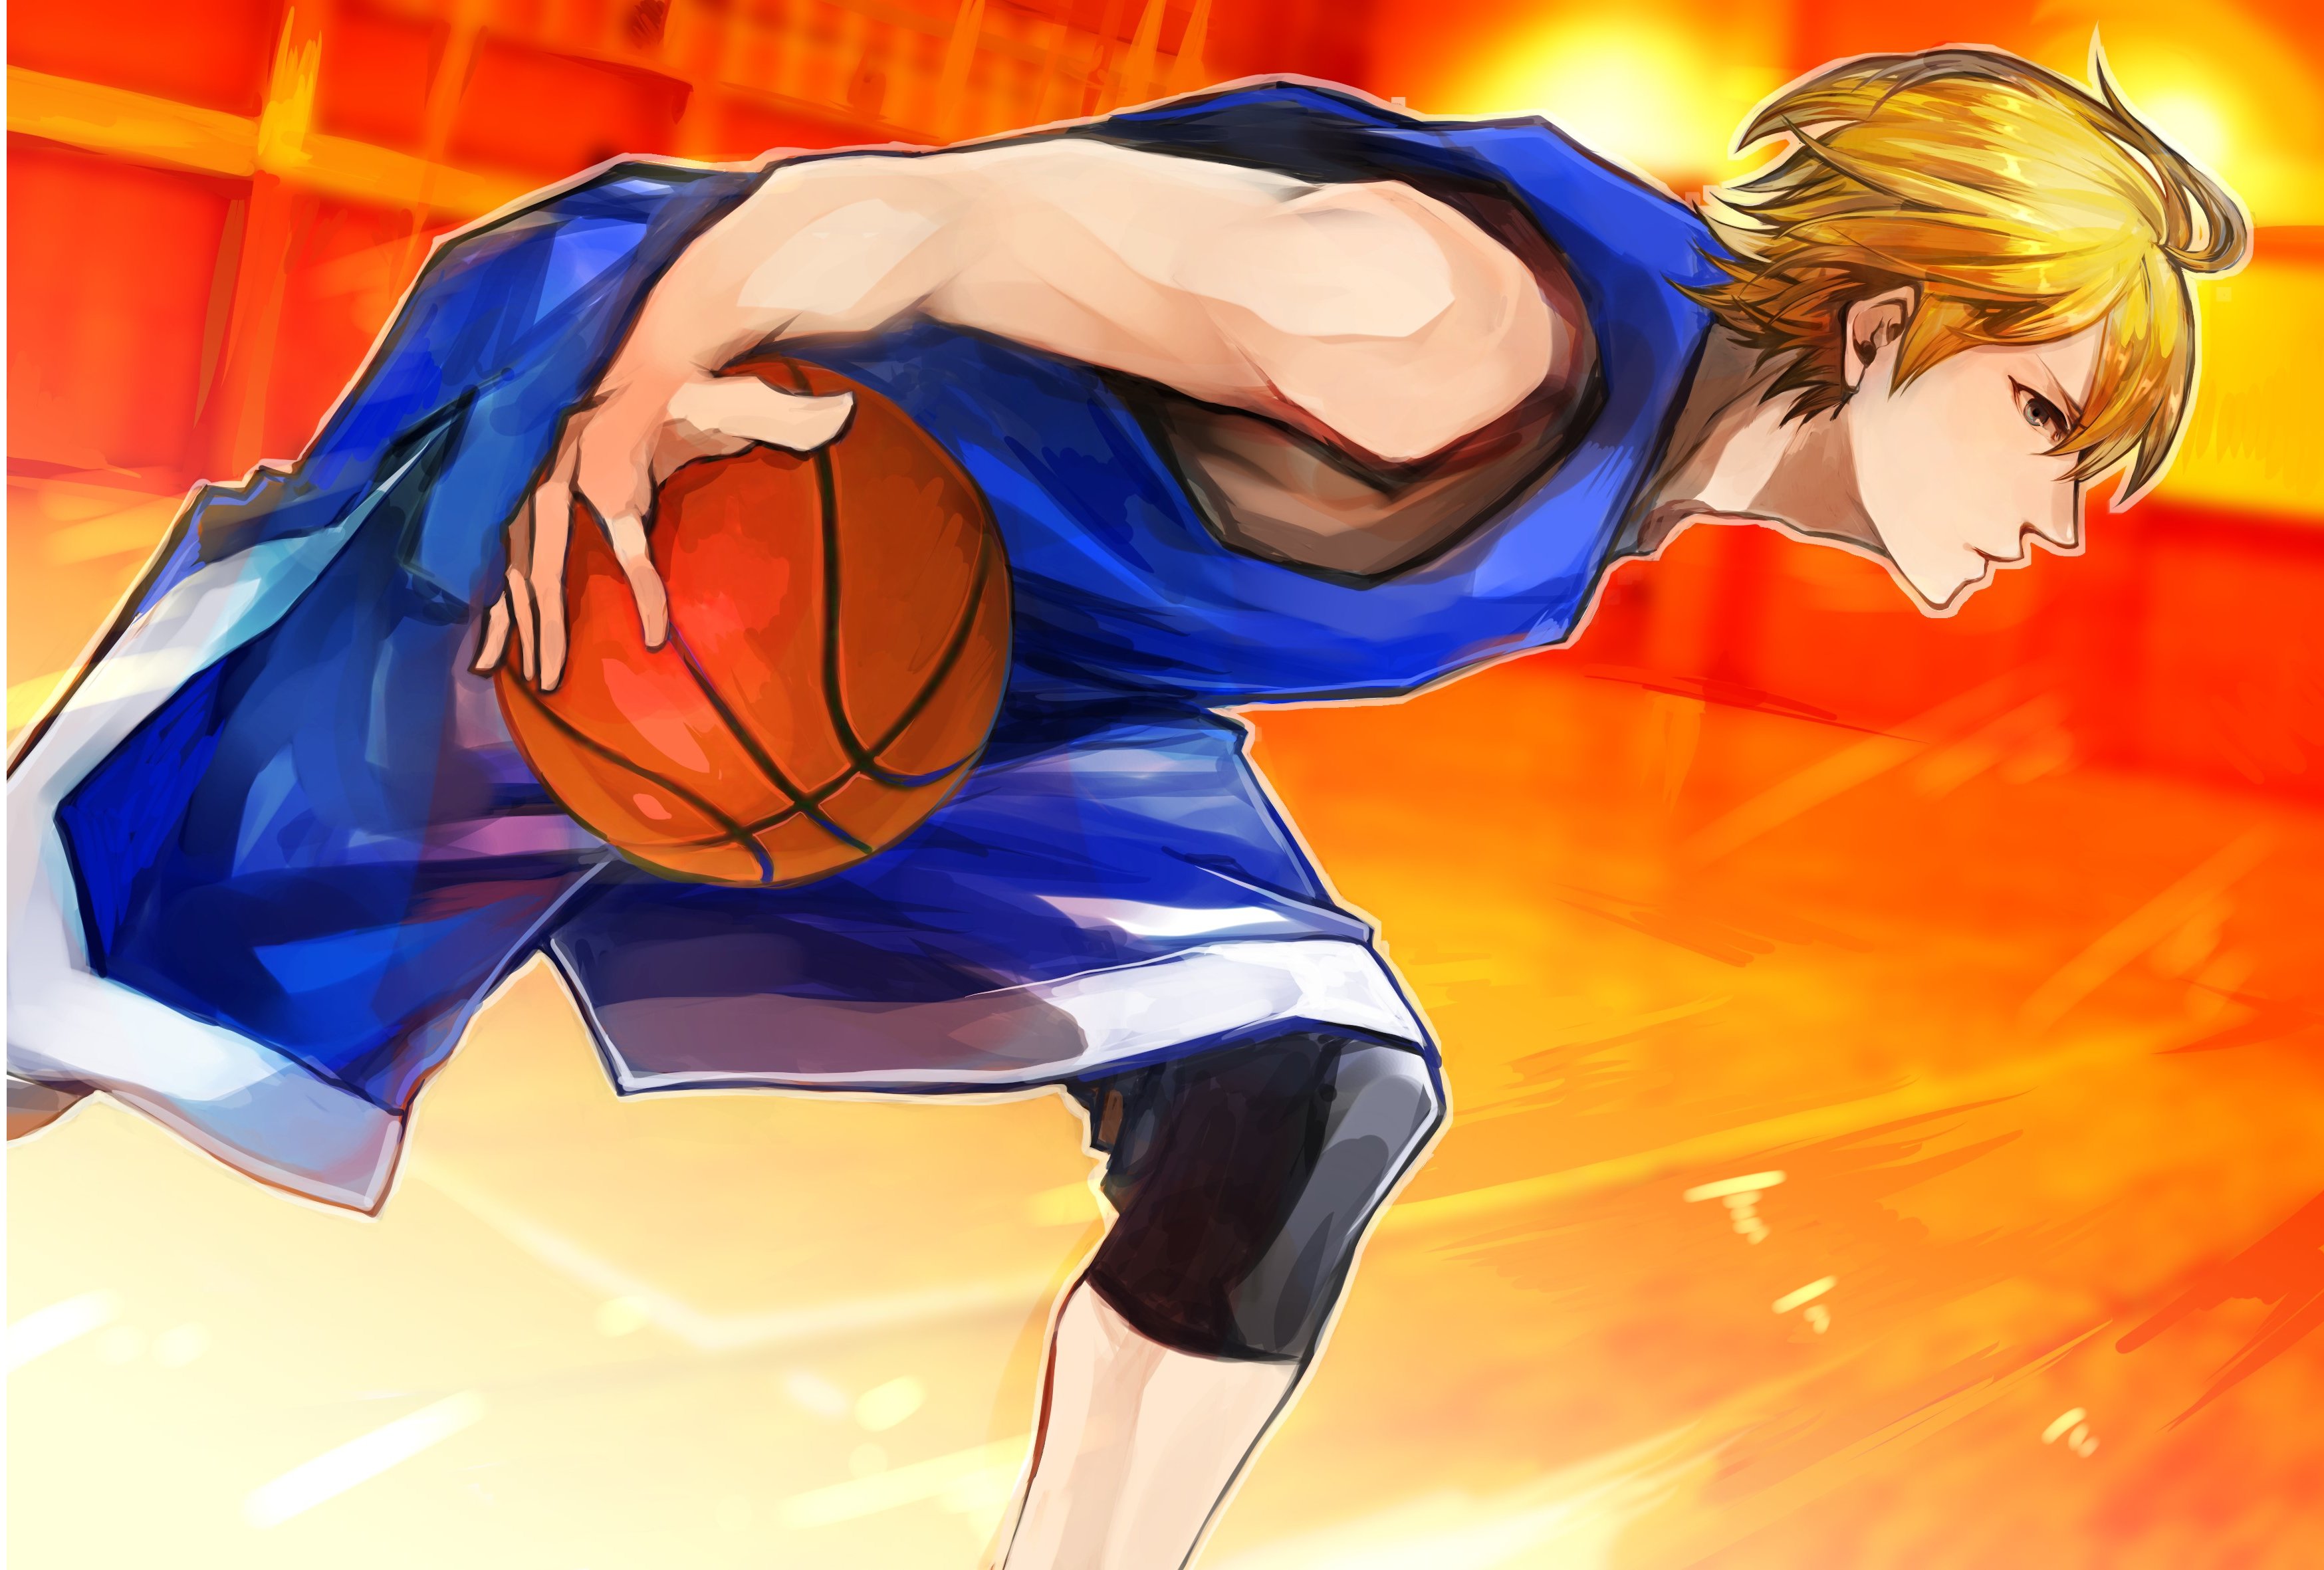 kise wallpaper,cartoon,anime,basketball,ball game,basketball player